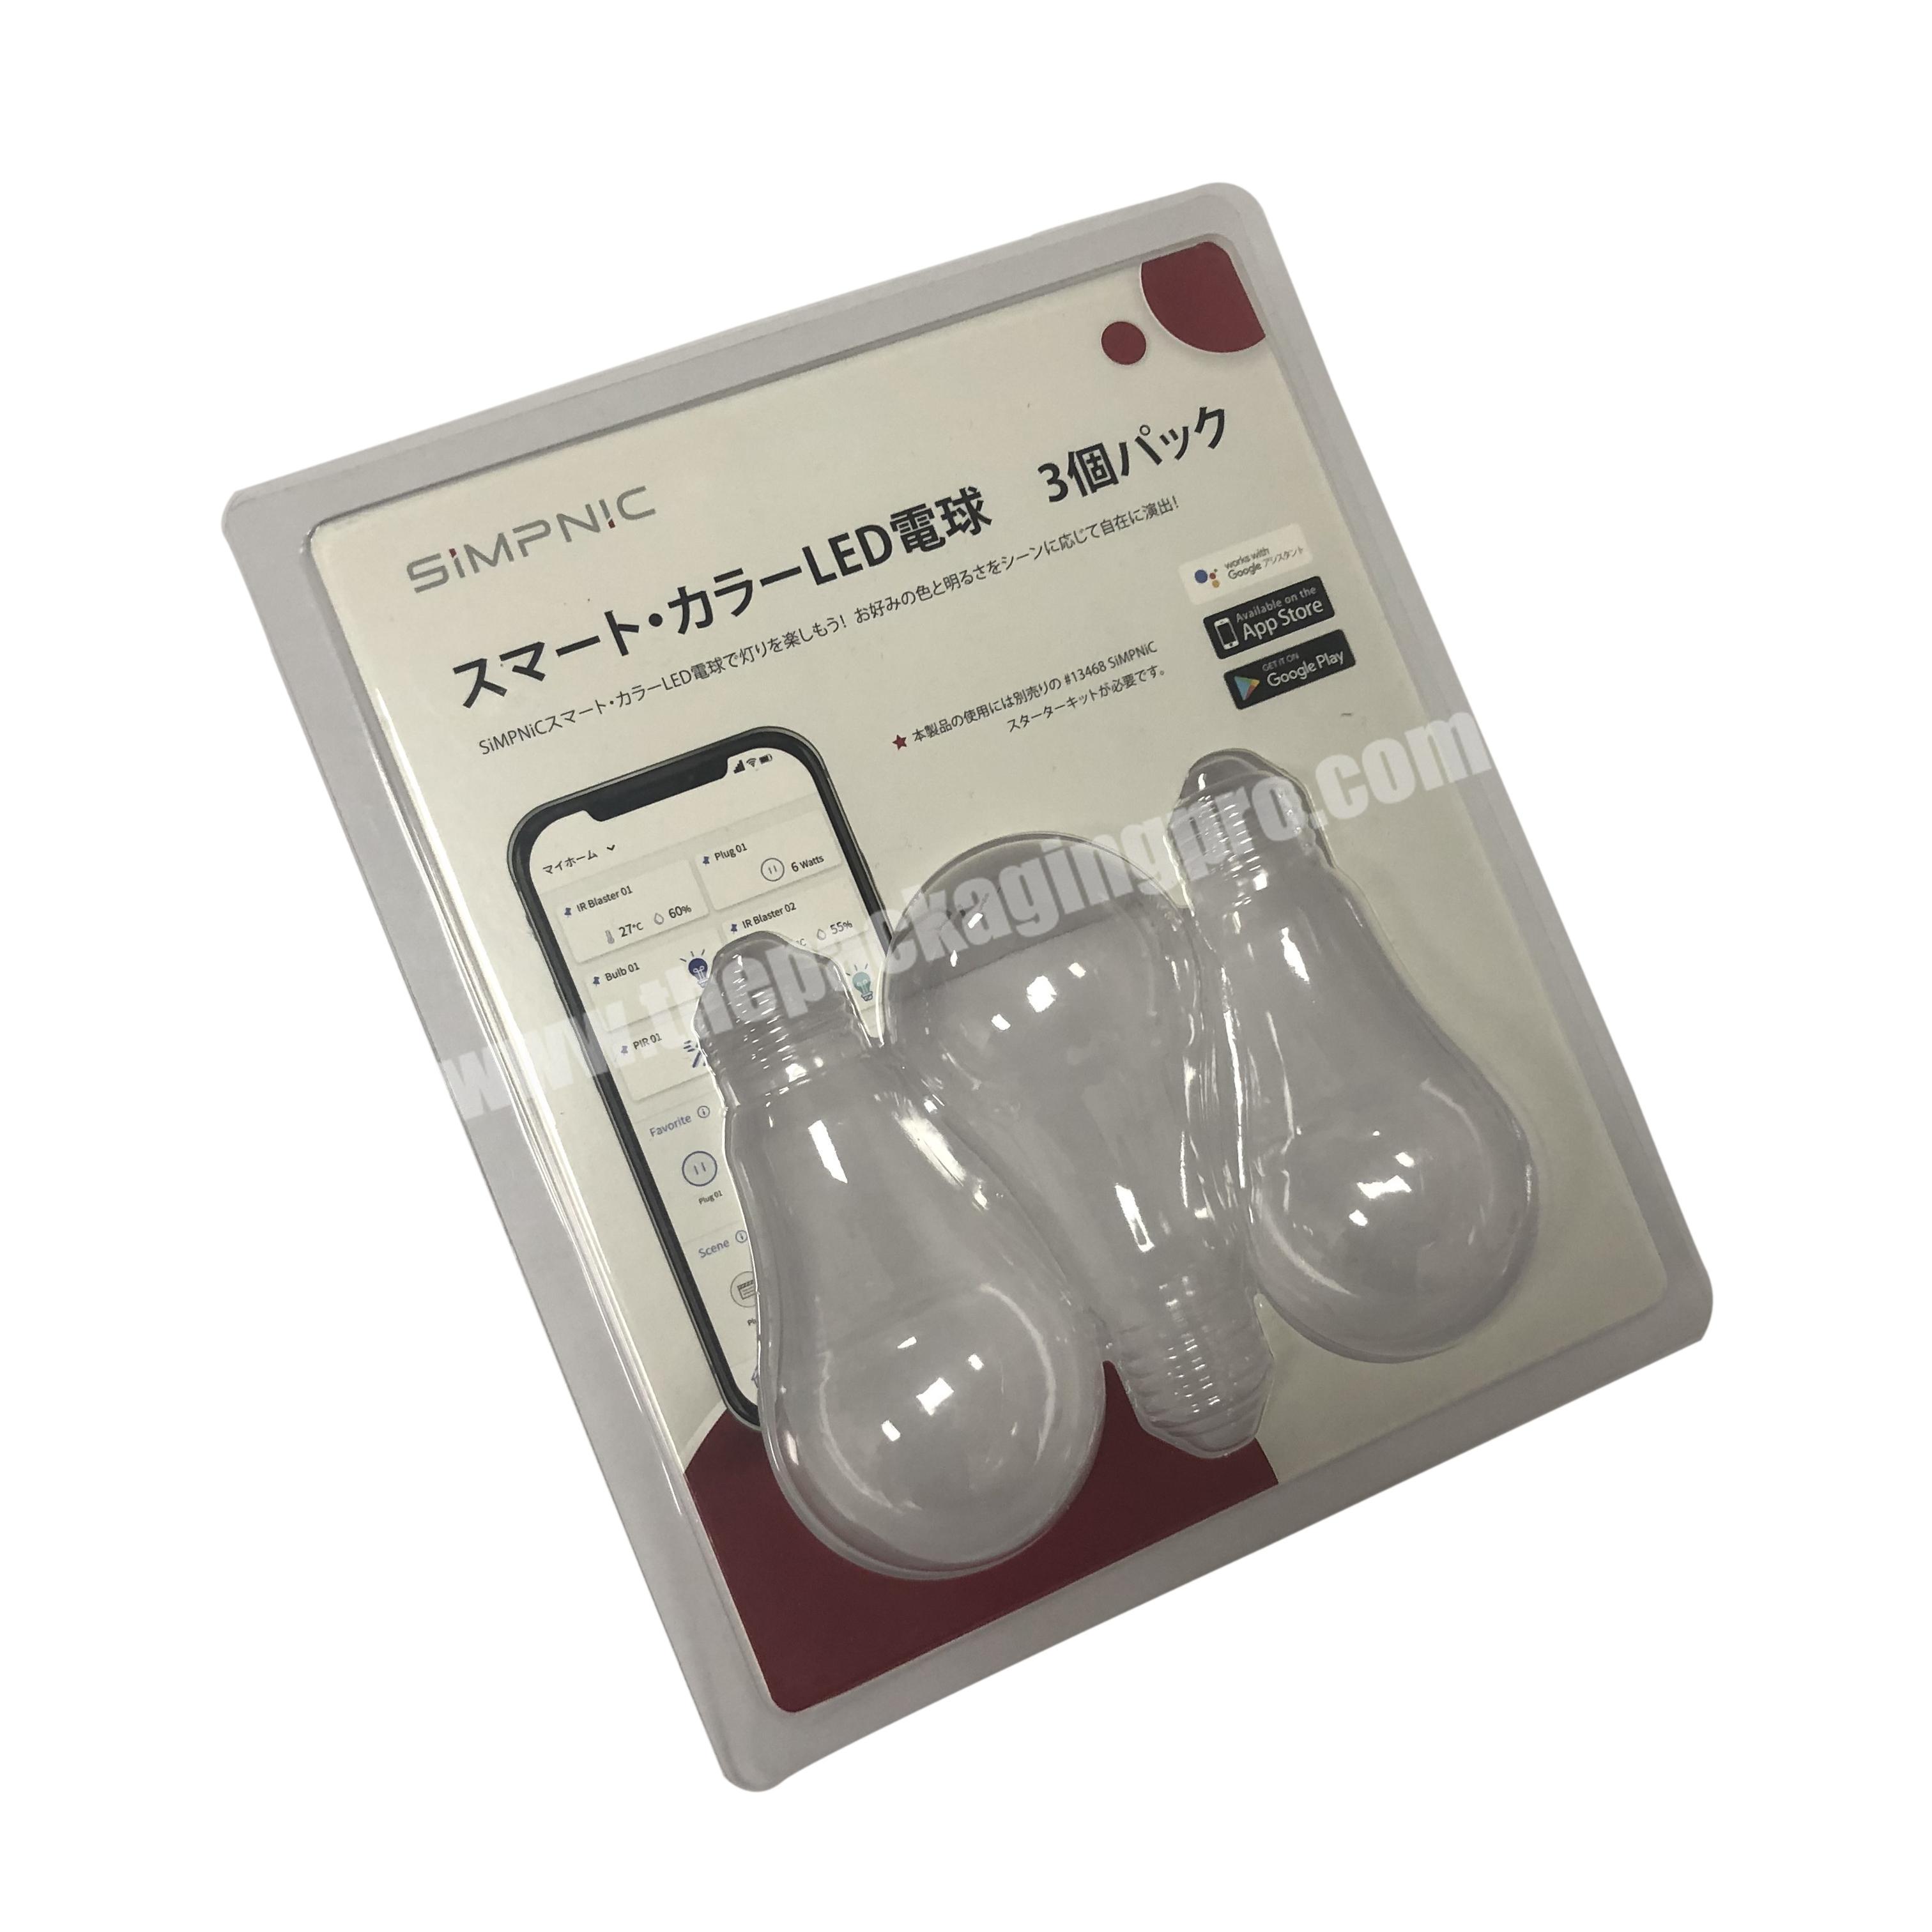 Custom logo PVC blister packaging boxes for light bulbs